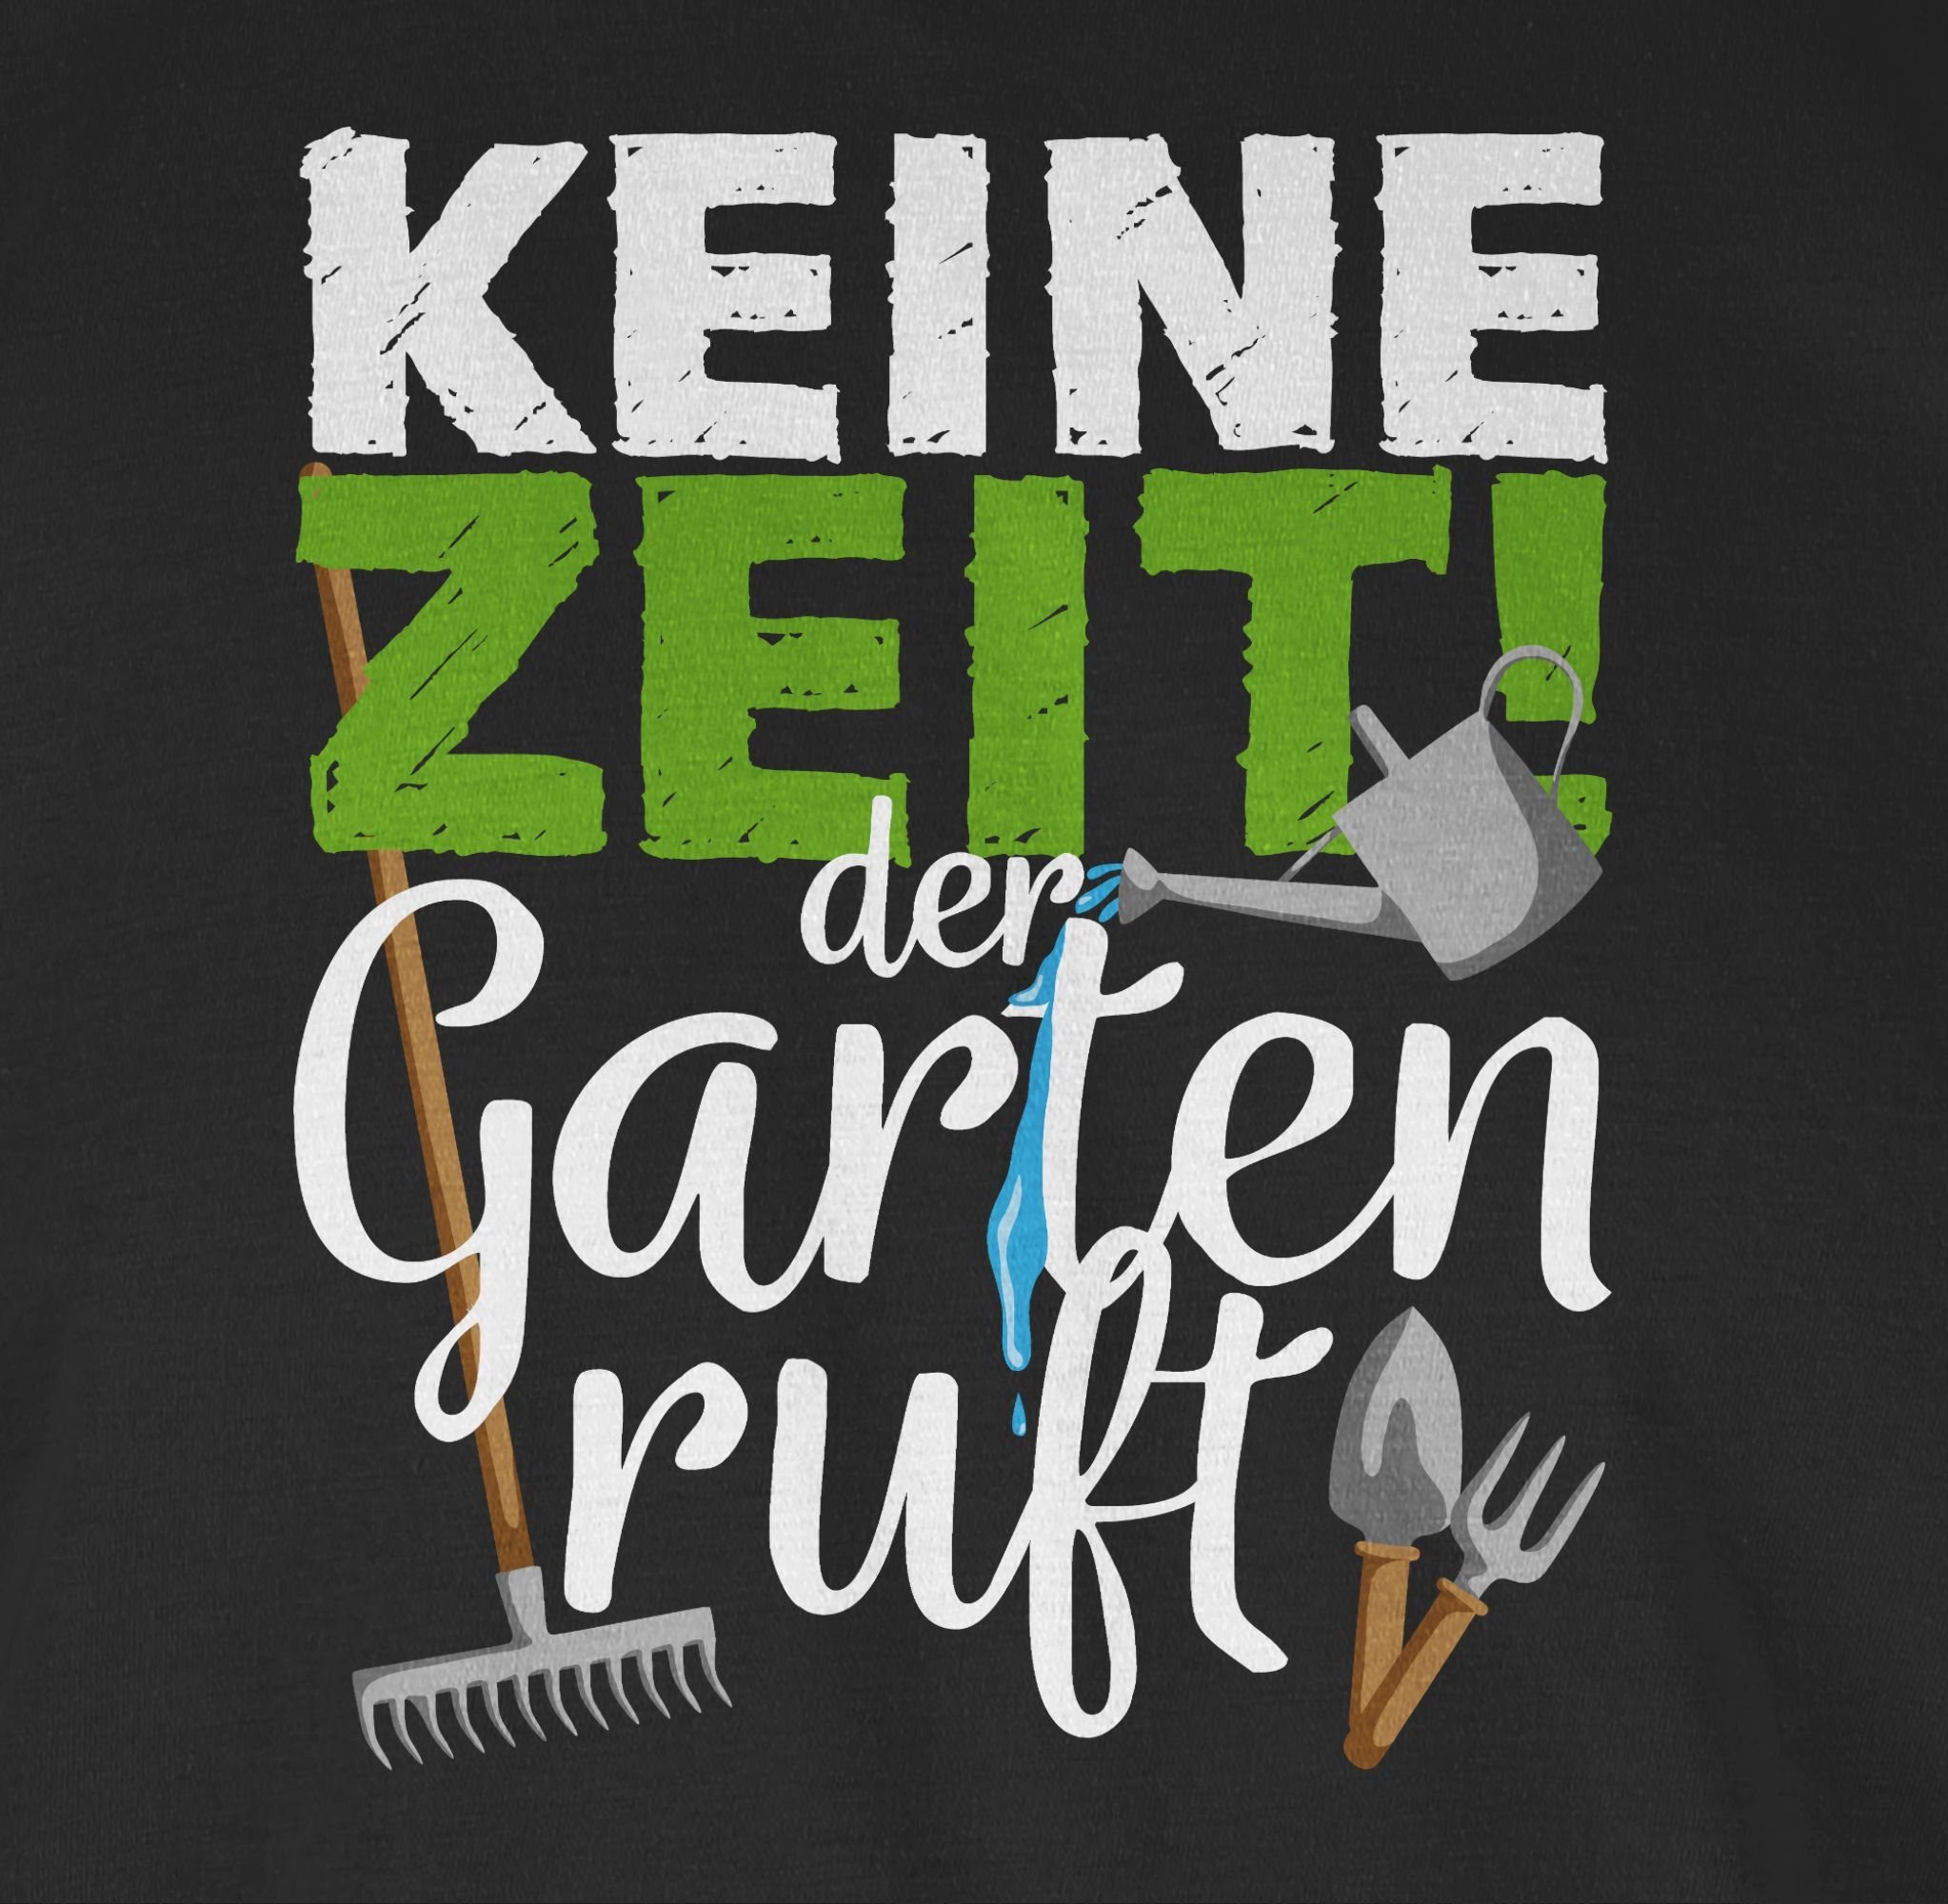 - Shirtracer Schwarz ruft Gartengeräte der T-Shirt 1 - Hobby Keine Outfit Zeit Garten weiß